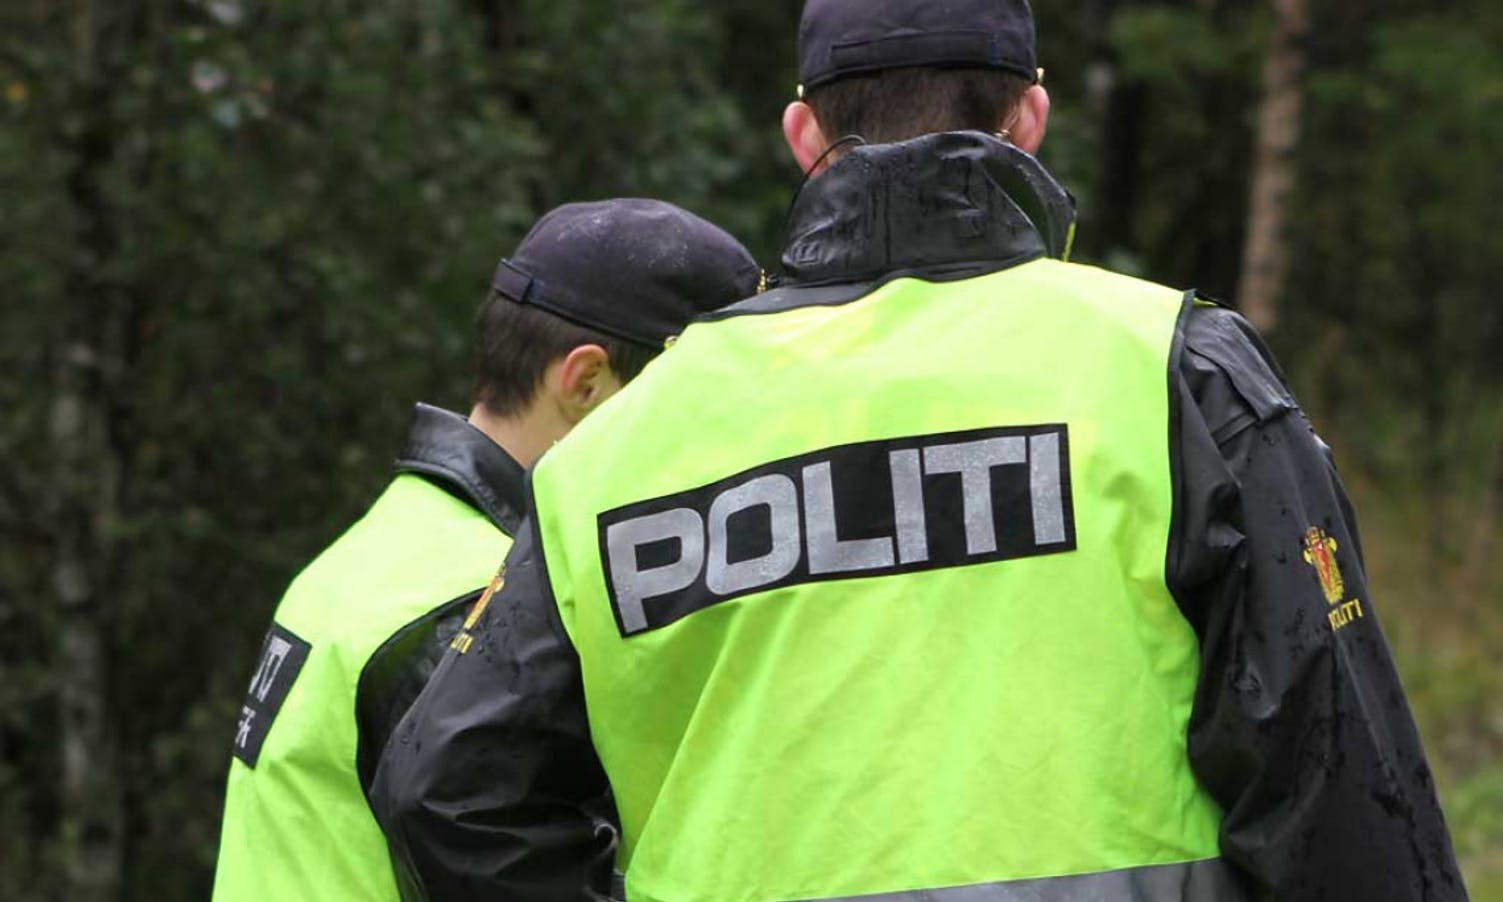 Politiet observerte ungdomar med softgun - oppretta sak og tok beslag